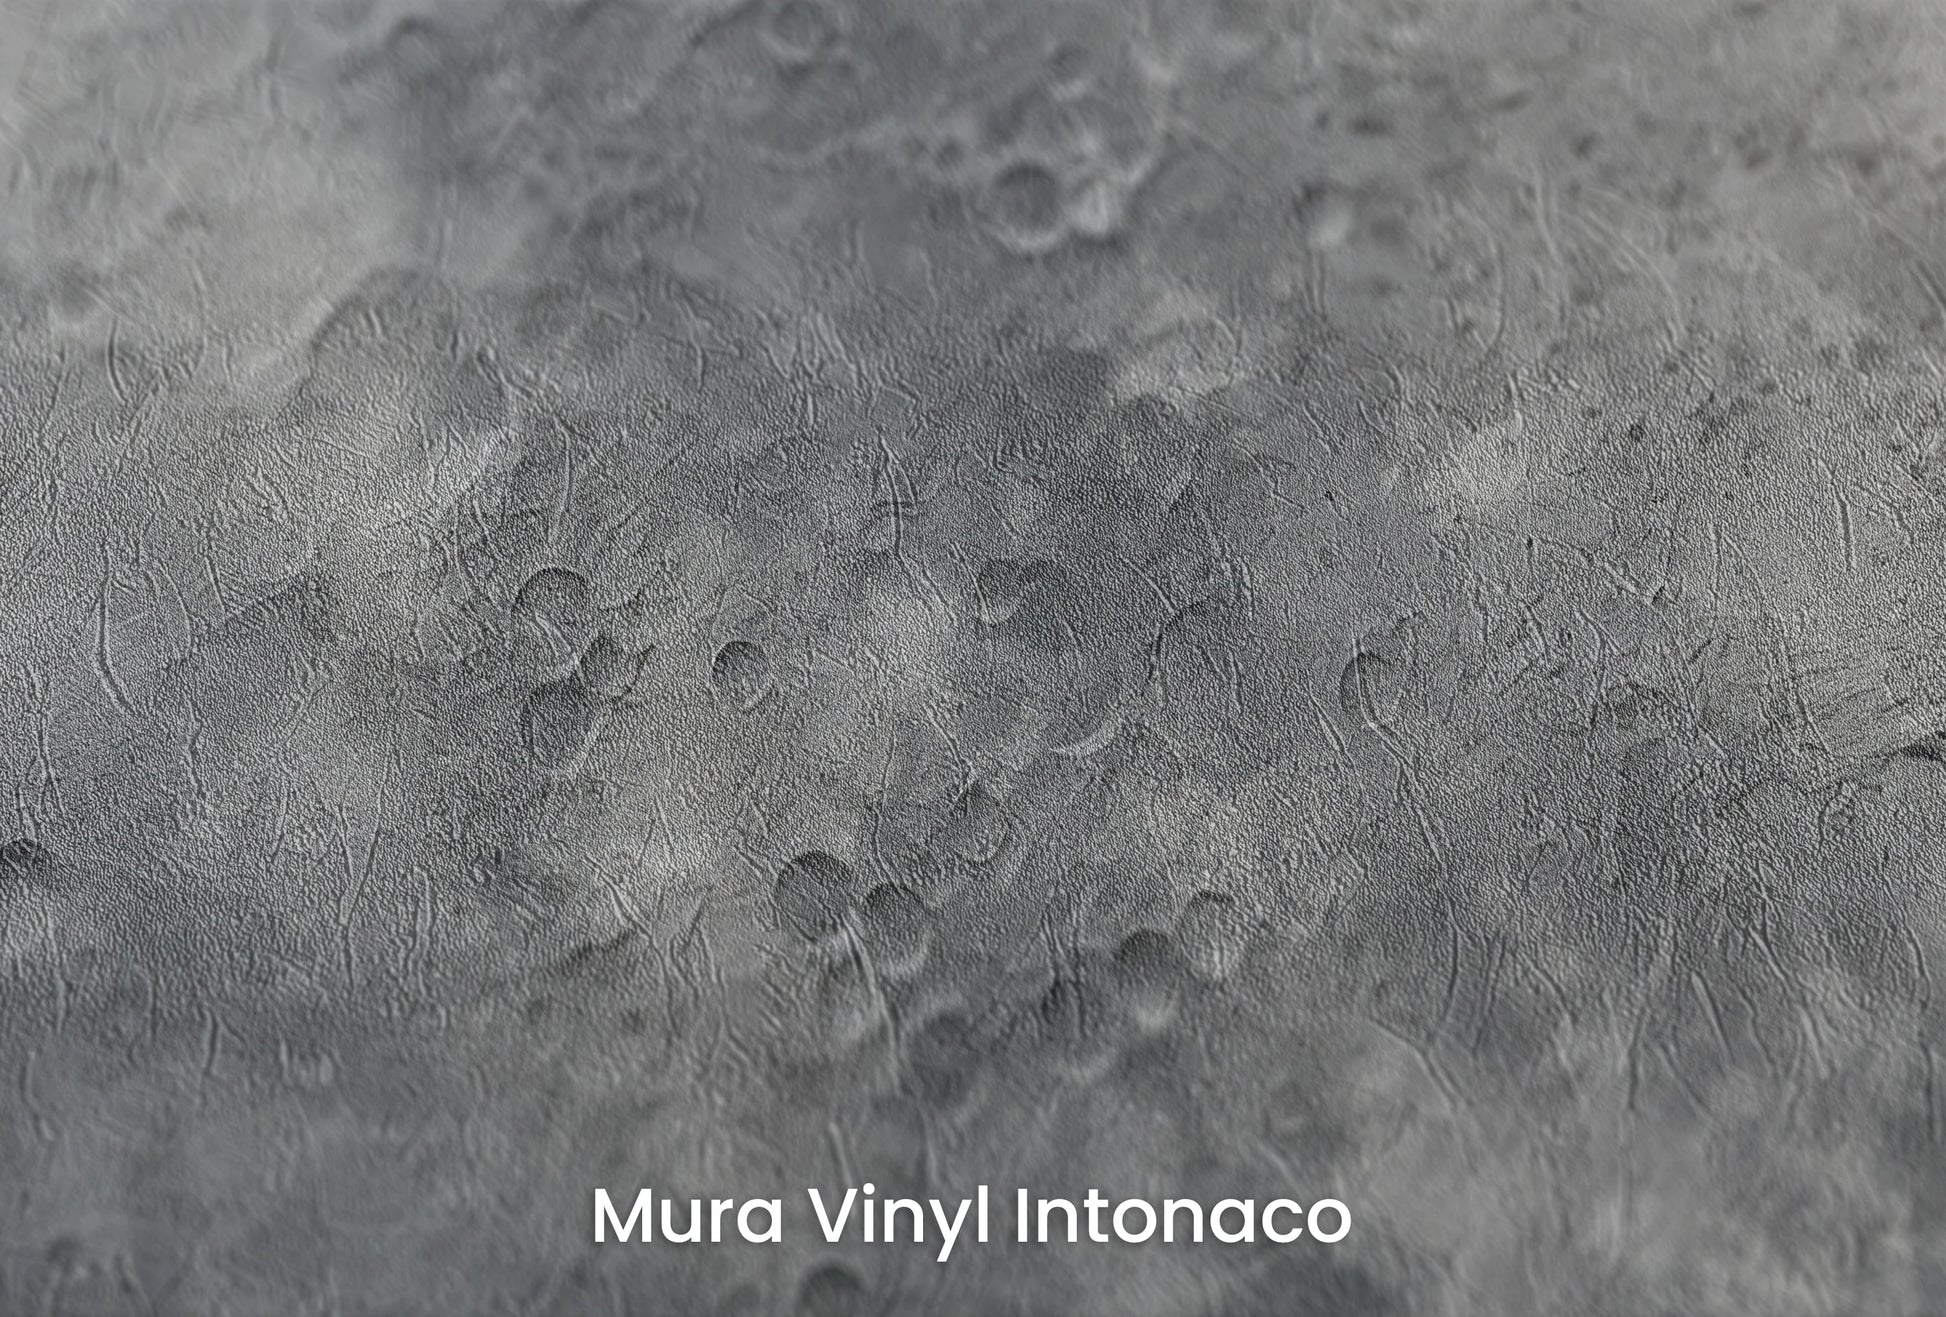 Zbliżenie na artystyczną fototapetę o nazwie Moon's Geography na podłożu Mura Vinyl Intonaco - struktura tartego tynku.